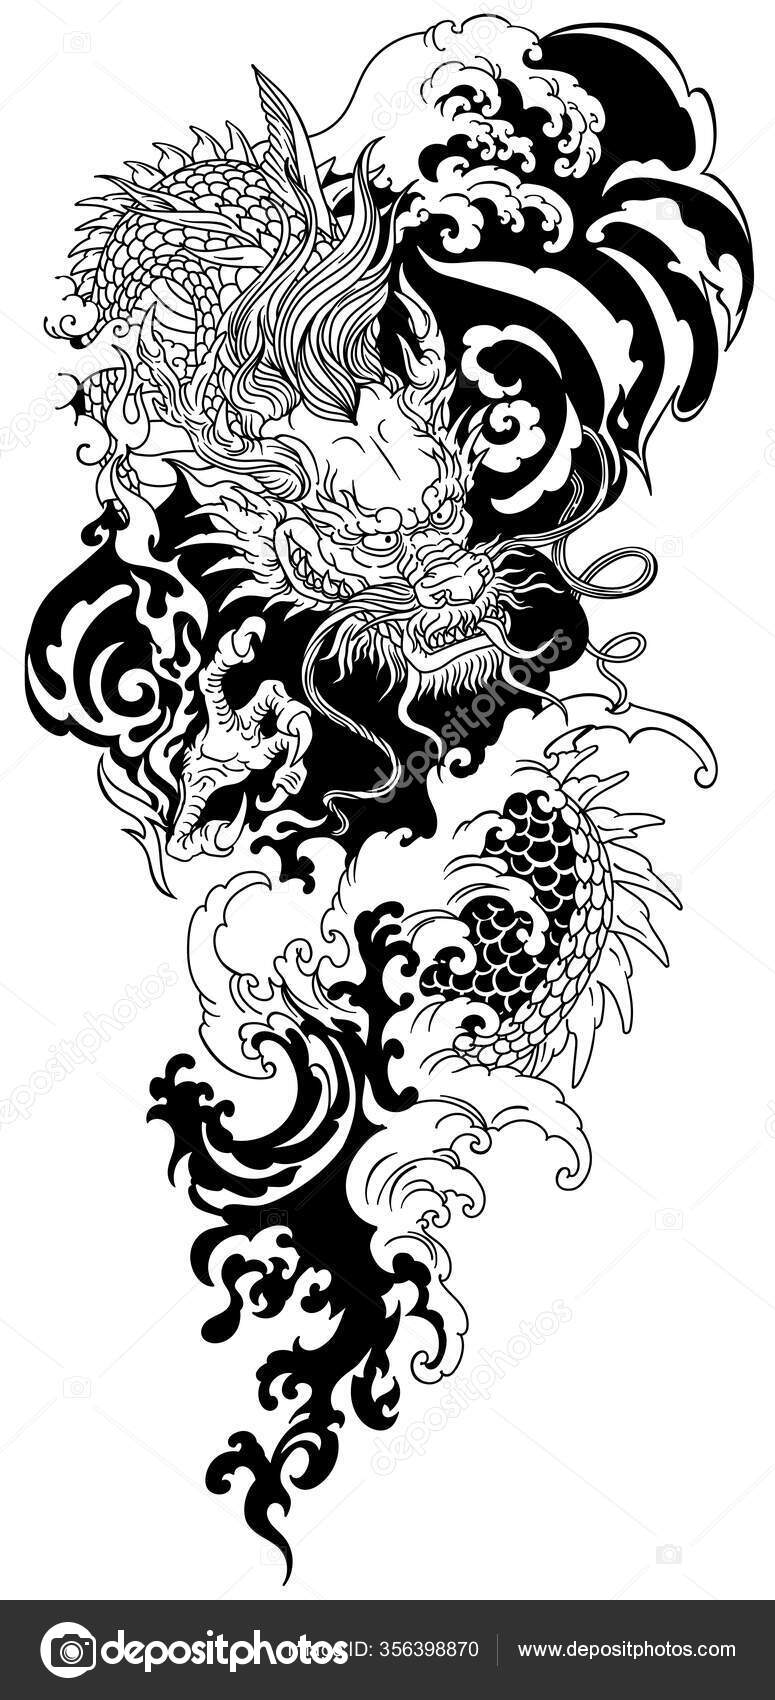 Nuvem Chinesa De Desenho Animado. Tatuagem Em Estilo Asiático Em